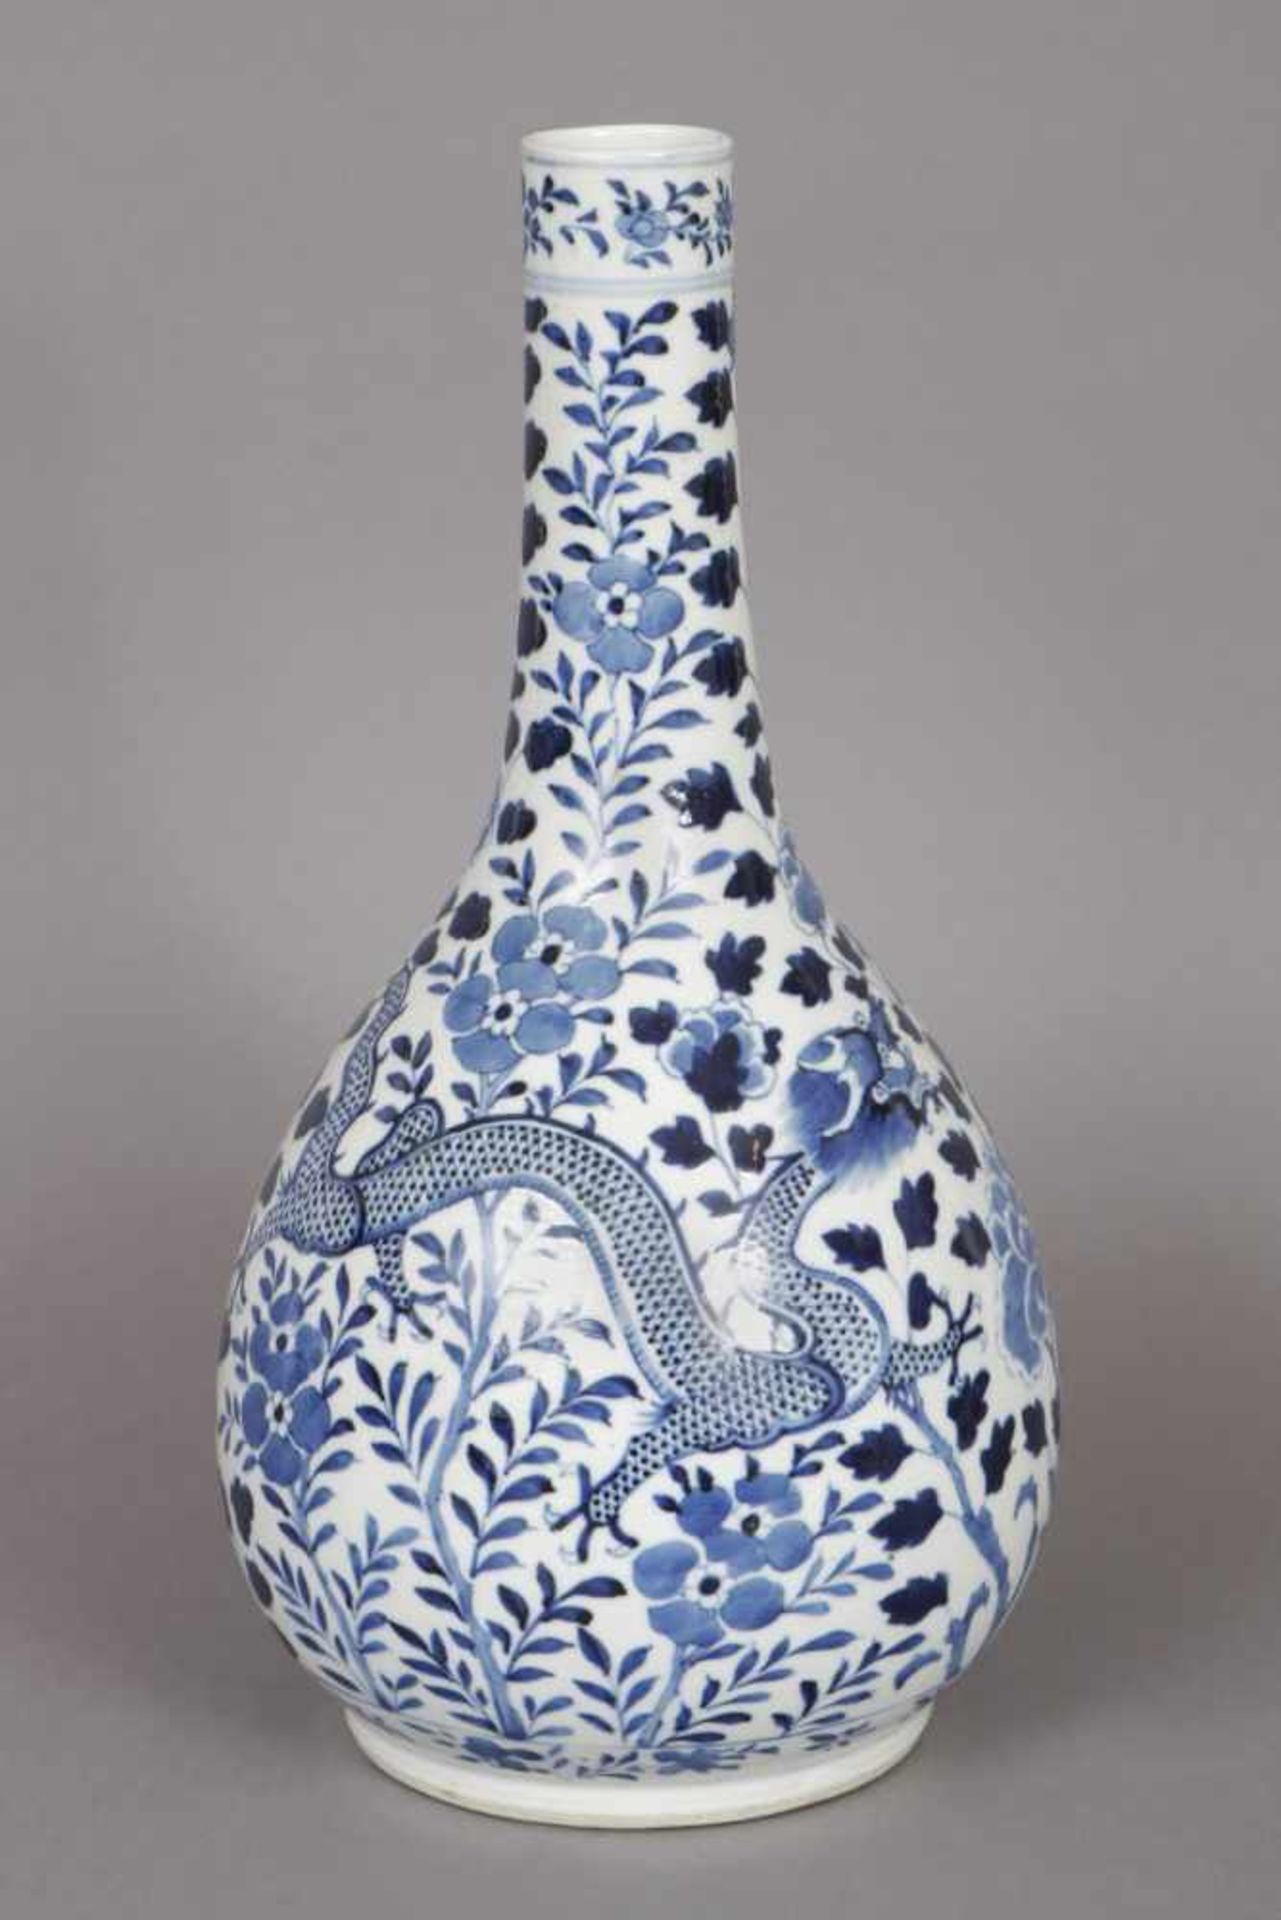 Chinesische Keulenvase im Stile Ming Porzellan, Drachen- und Floraldekor in Blaumalerei, runder